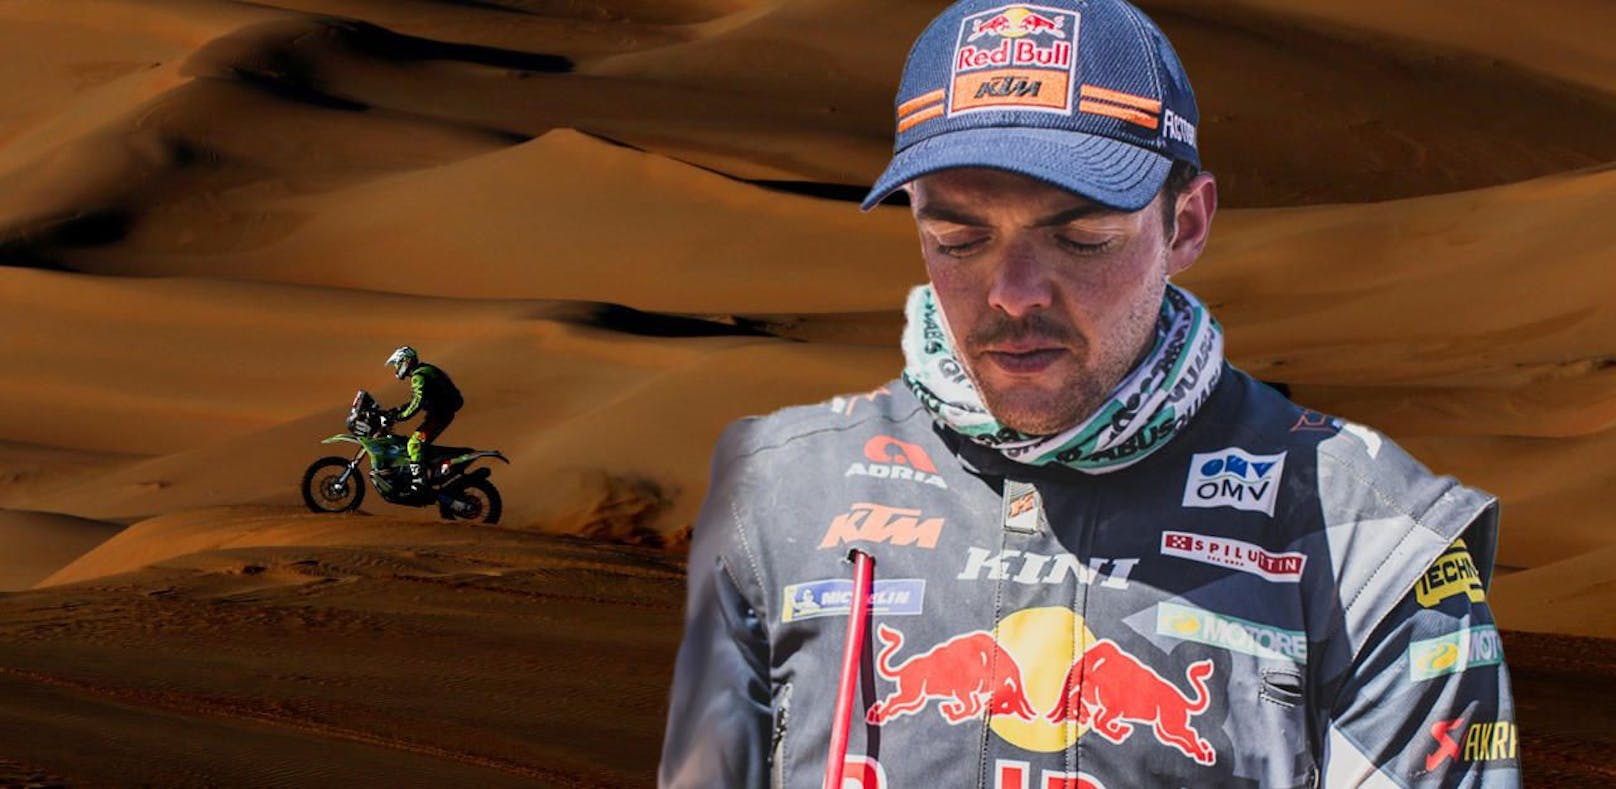 Matthias Walkner bei der Rallye Dakar. Im Hintergrund ist Edwin Straver zu sehen. Der Niederländer war nach einem Sturz zehn Minuten ohne Herzschlag und ist in kritischem Zustand. Rund eine Woche später erlag er seinen Verletzungen.